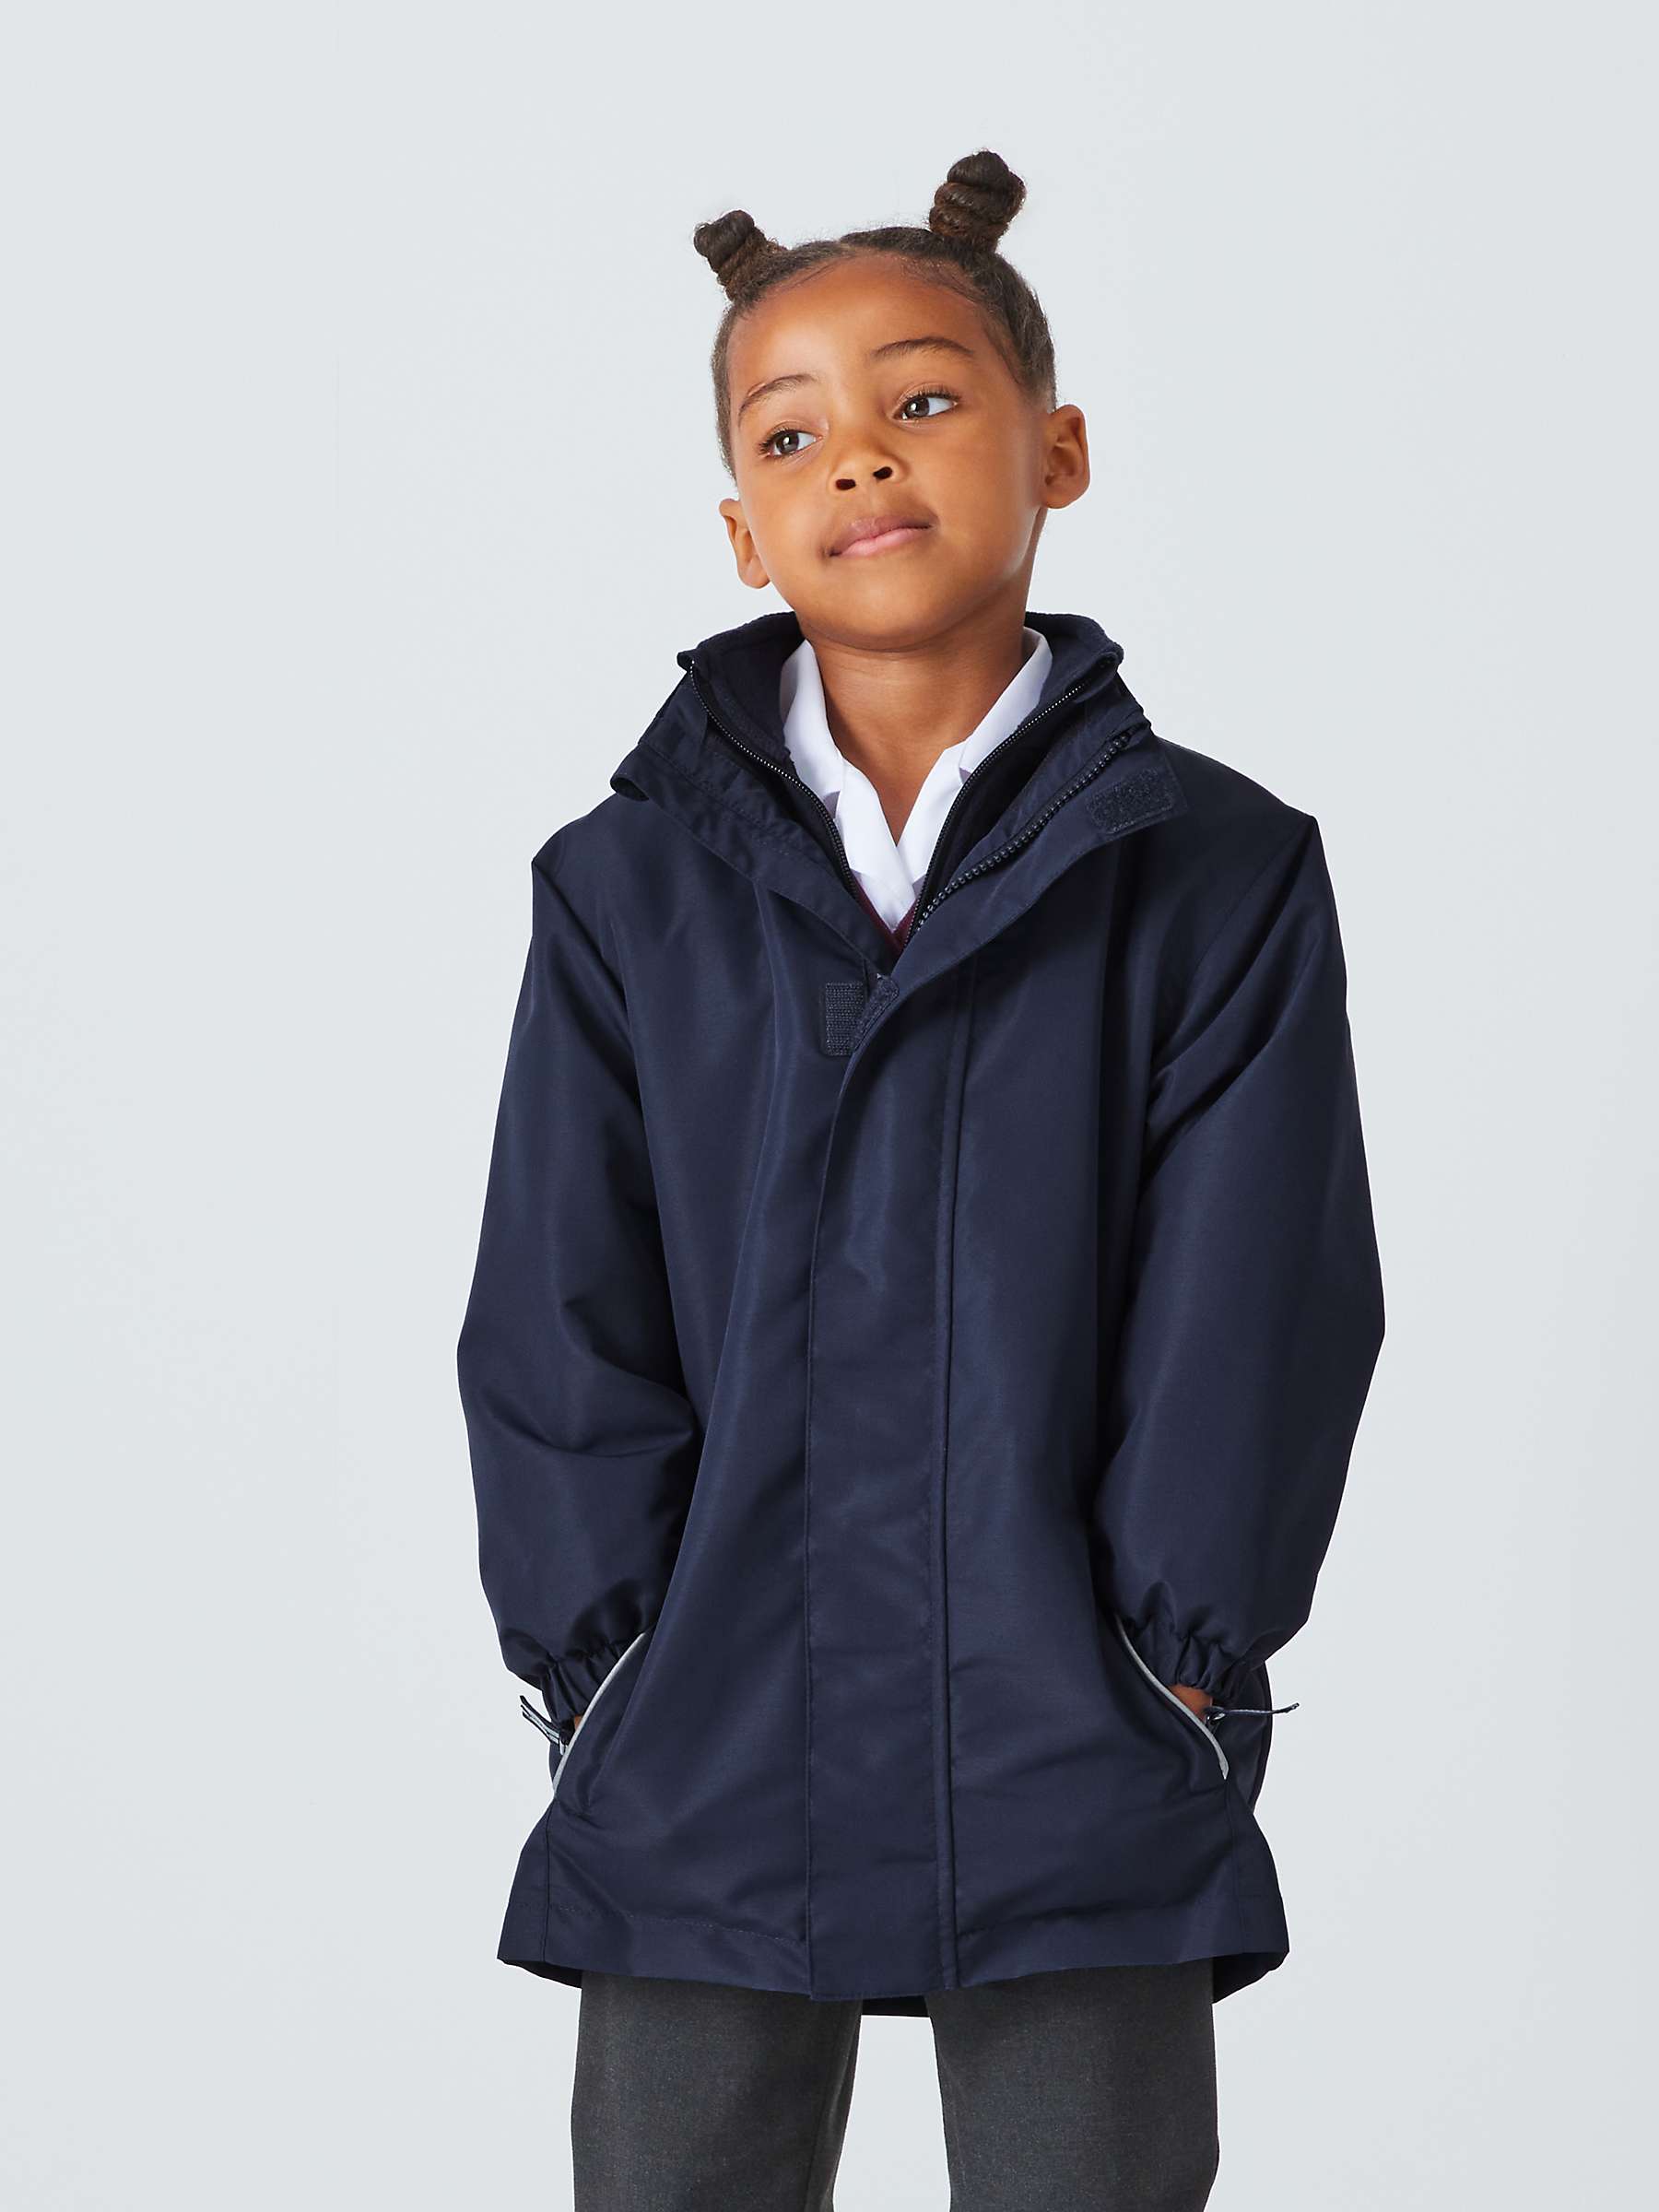 Buy John Lewis Kids' 3-In-1 School Jacket, Blue Navy Online at johnlewis.com